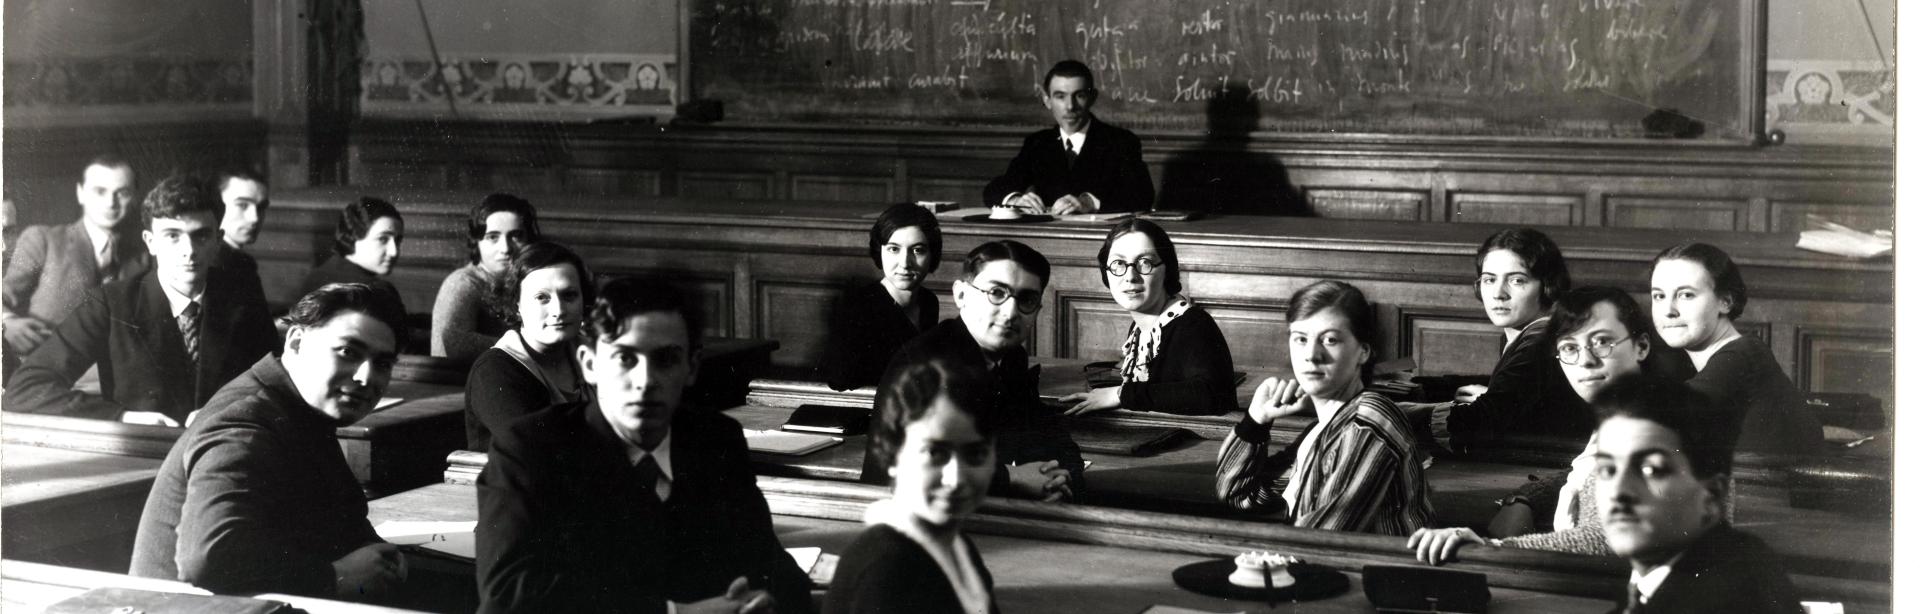 Des élèves assis en classe se retournent pour poser, le professeur Clovis Brunel est assis au fond à la chaire